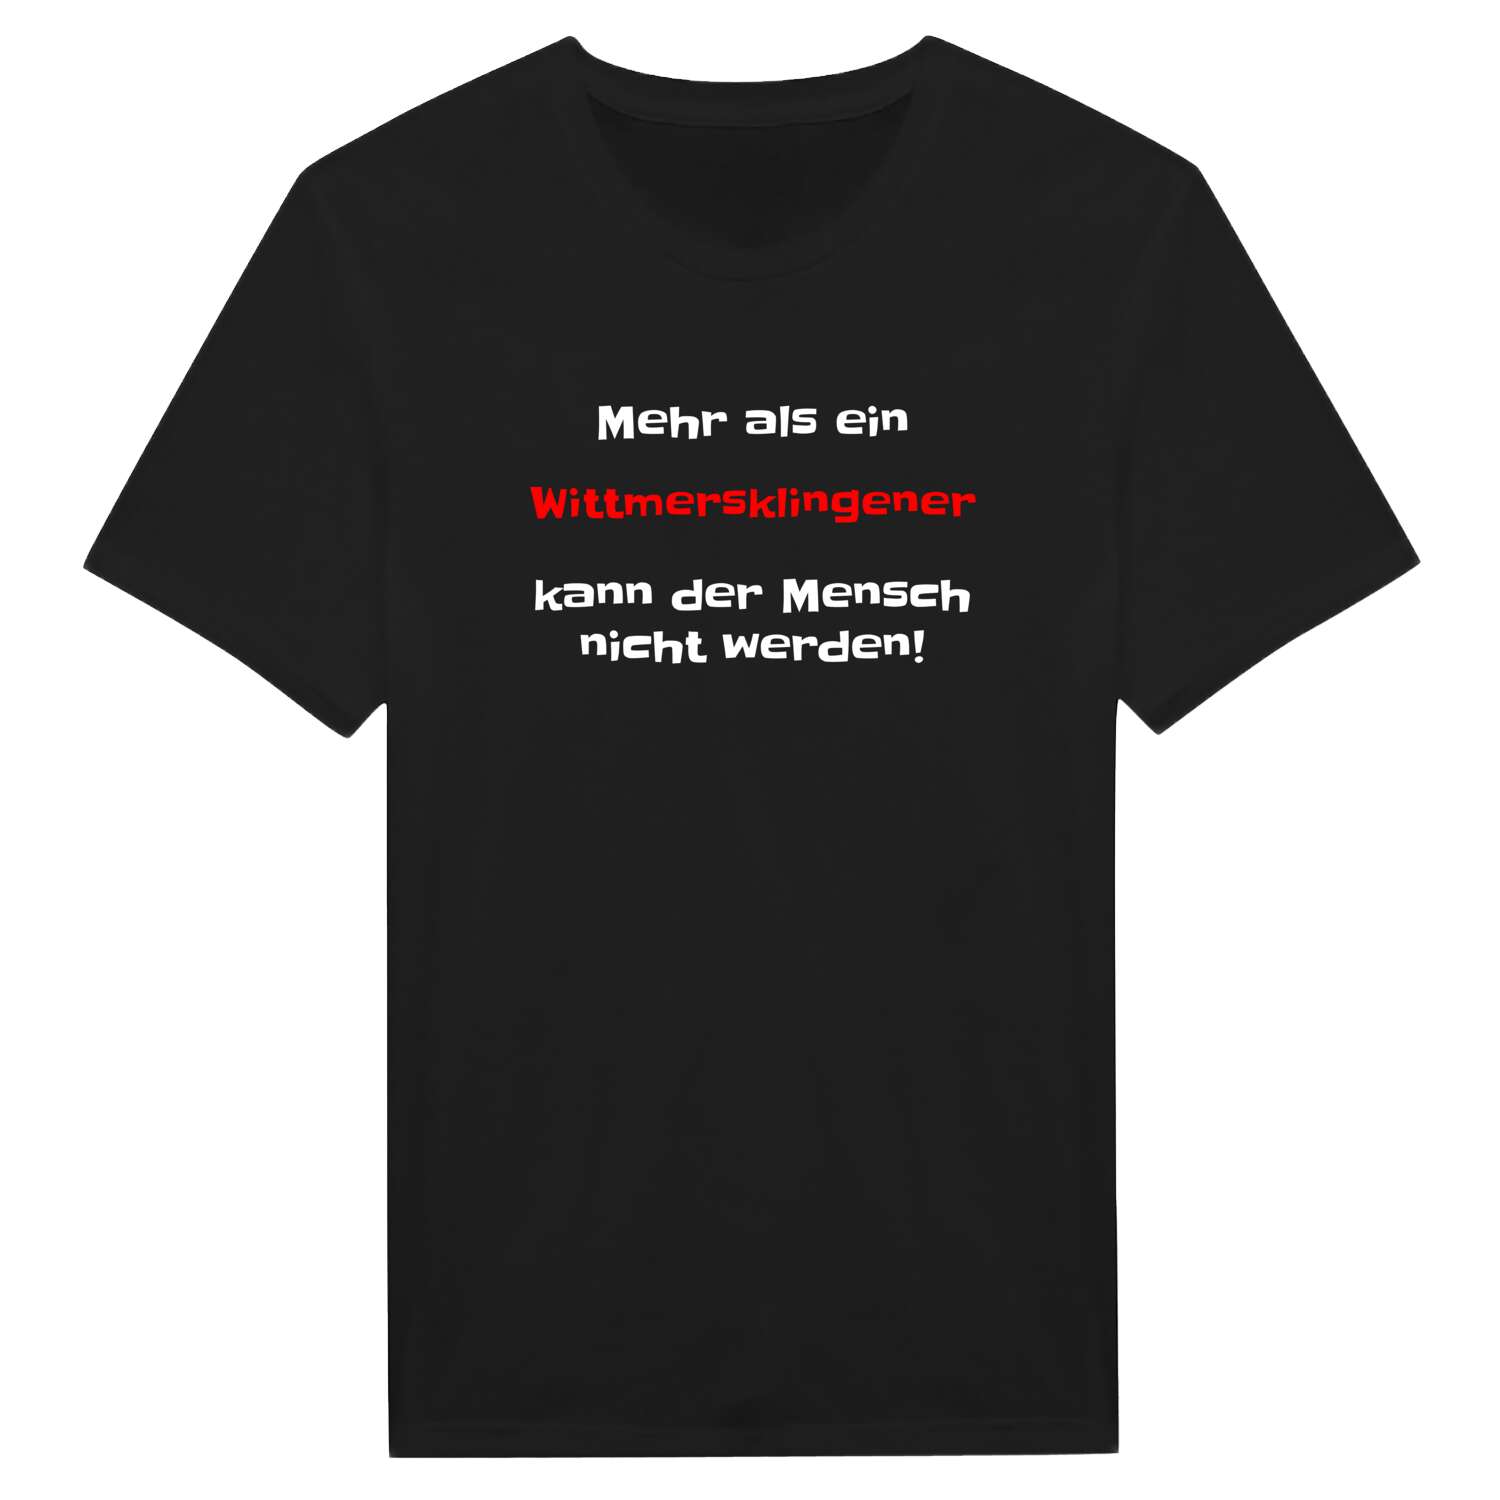 Wittmersklingen T-Shirt »Mehr als ein«